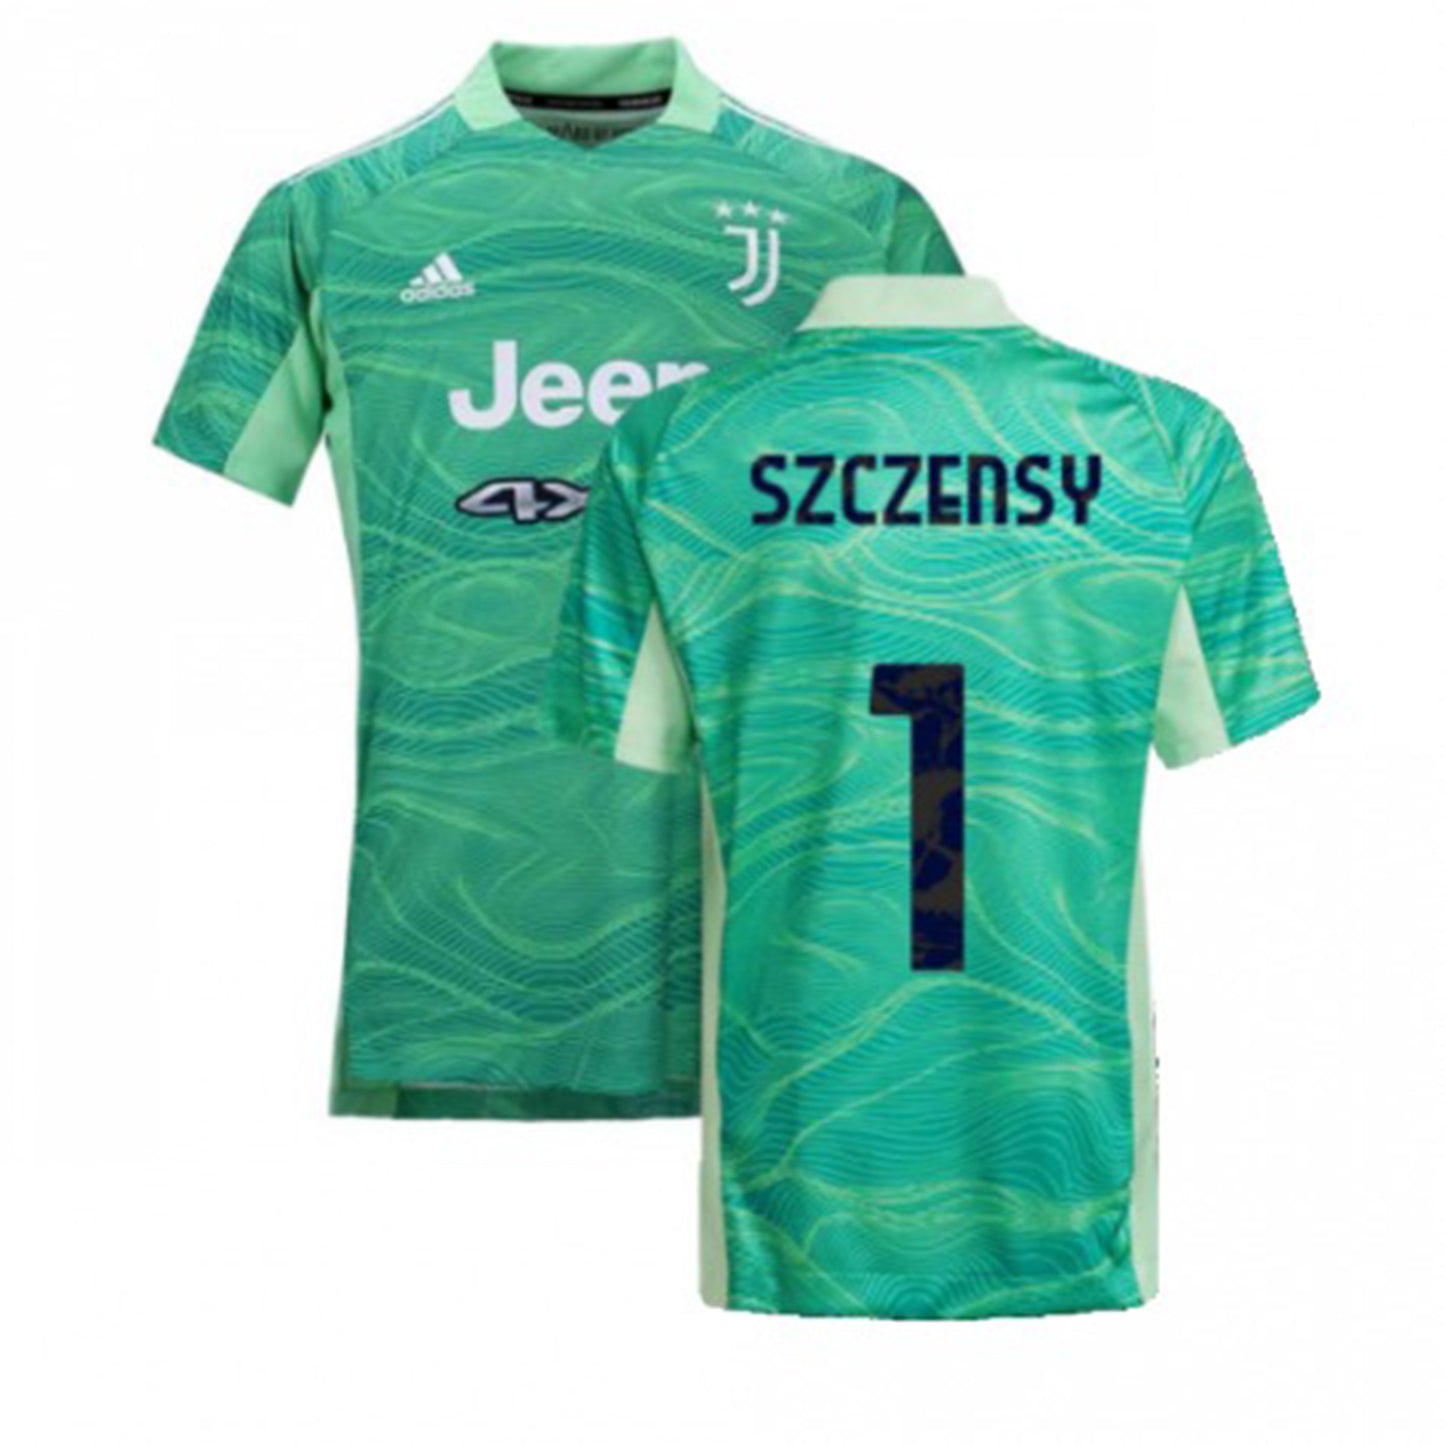 Wojciech Szczęsny Juventus 1 Jersey